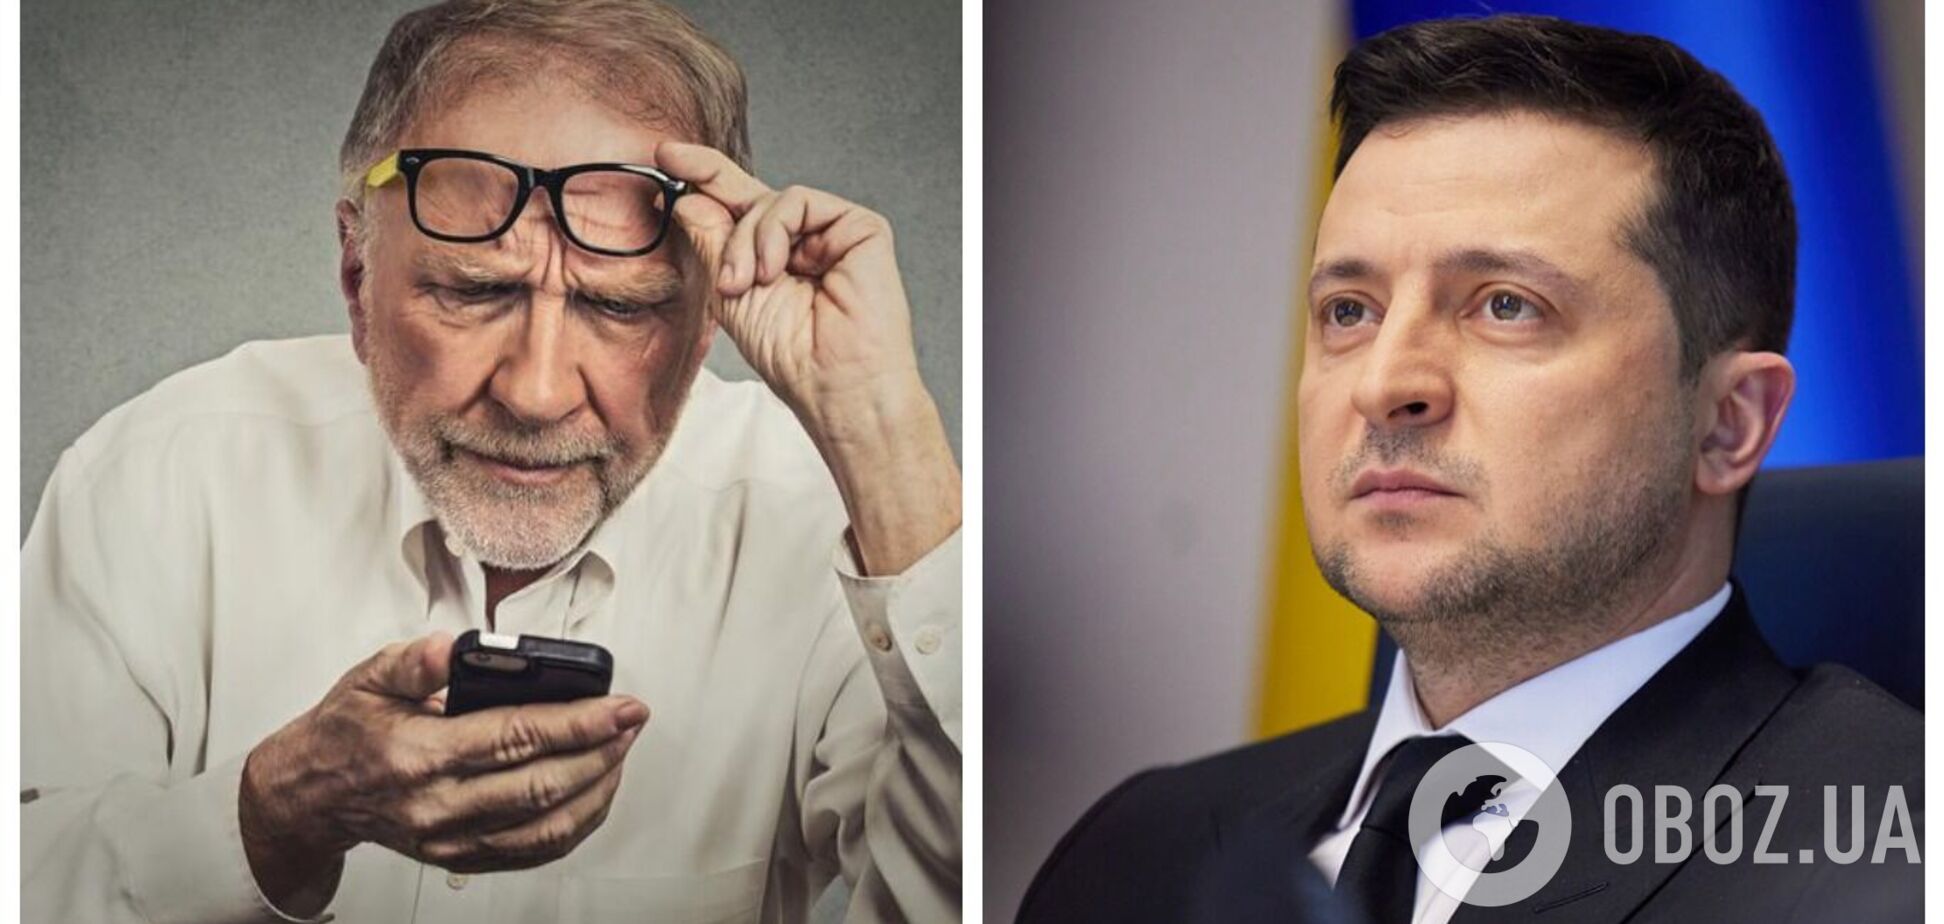 Давайте сразу iPhone: украинцы бурно отреагировали на заявление Зеленского о смартфонах для пенсионеров